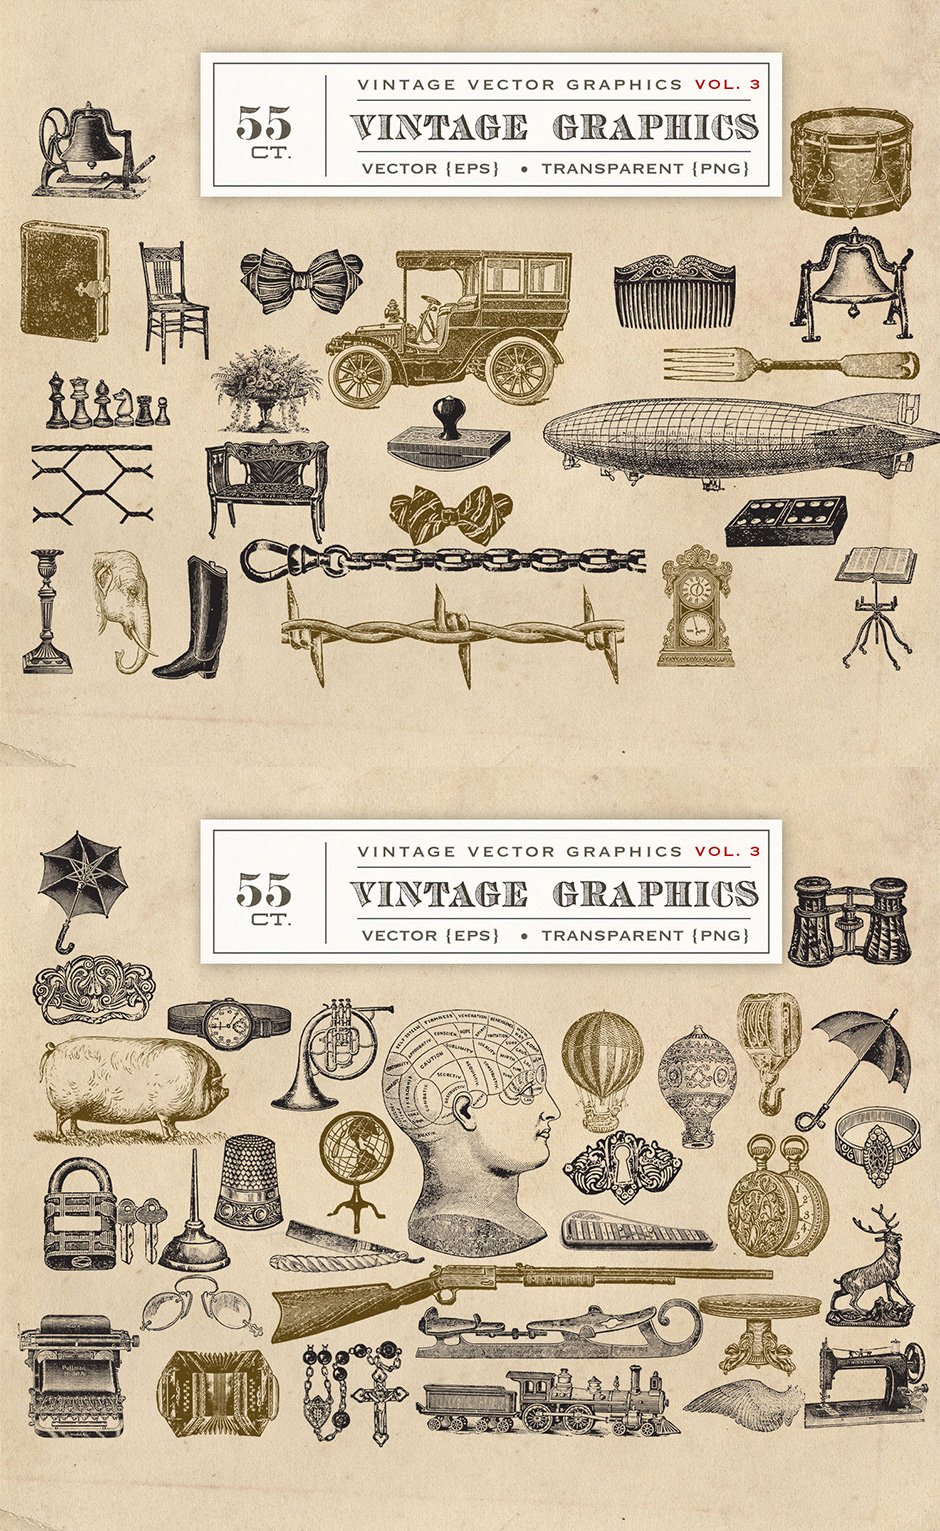 Vector Vintage Graphics Vol. 3